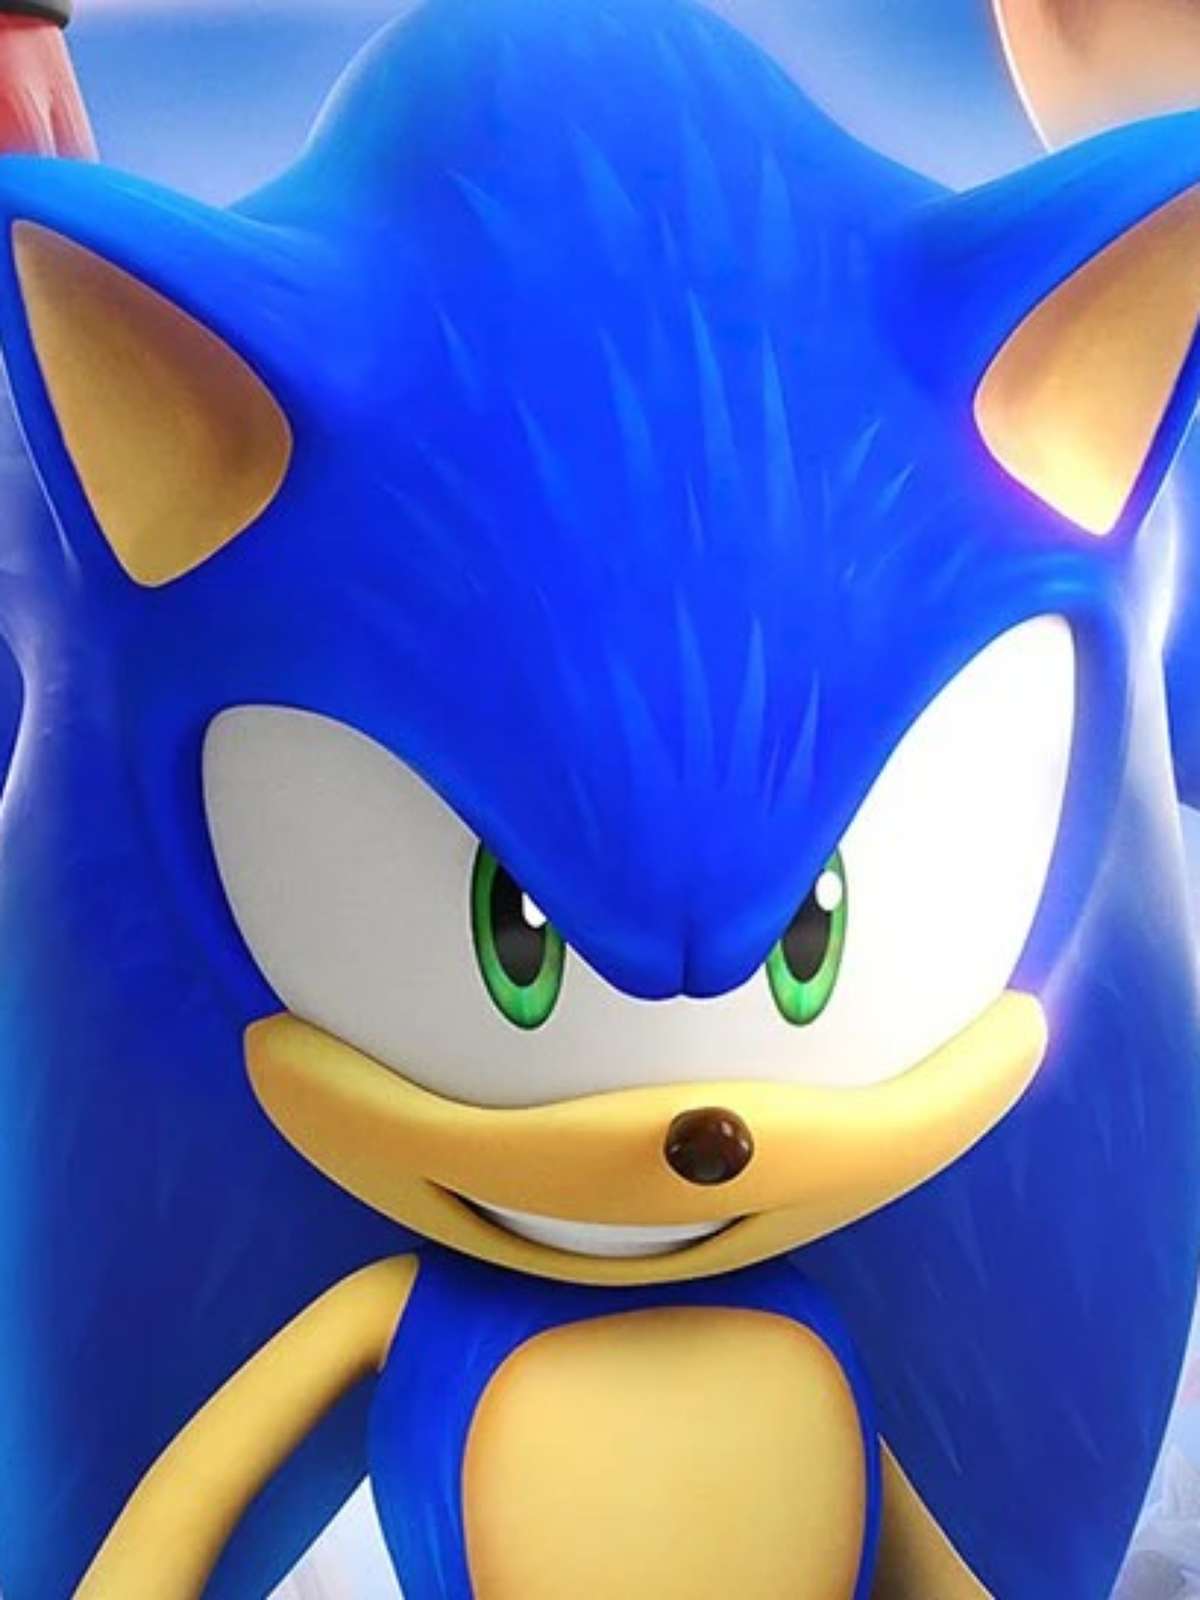 Sonic Prime  Segunda temporada está disponível na Netflix